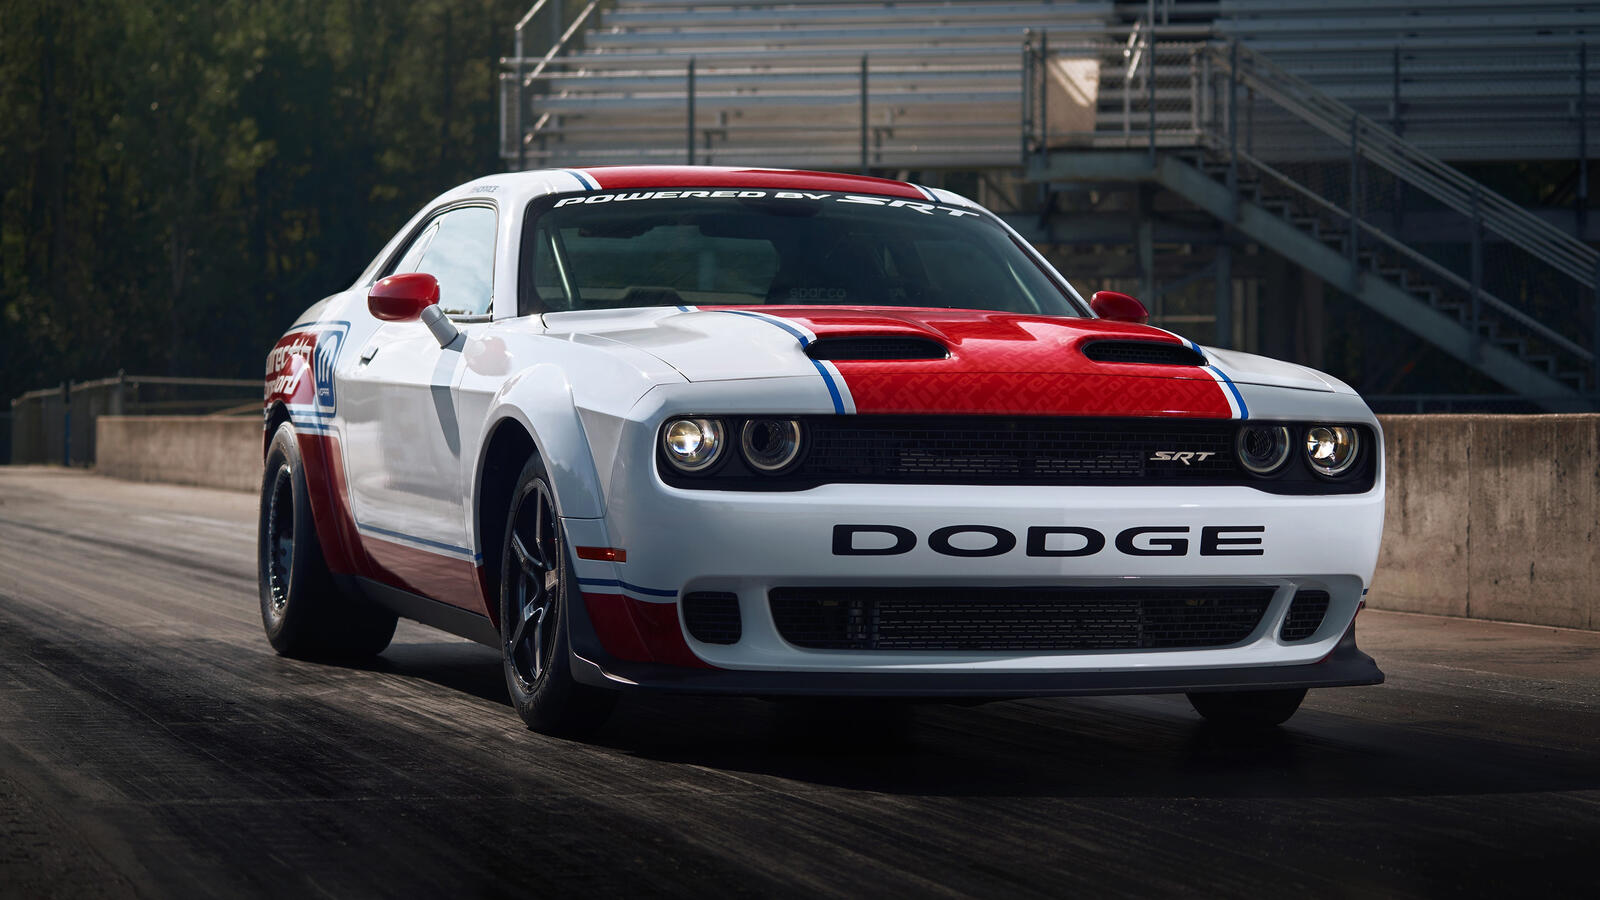 Бесплатное фото Dodge Challenger с красной полосой на капоте